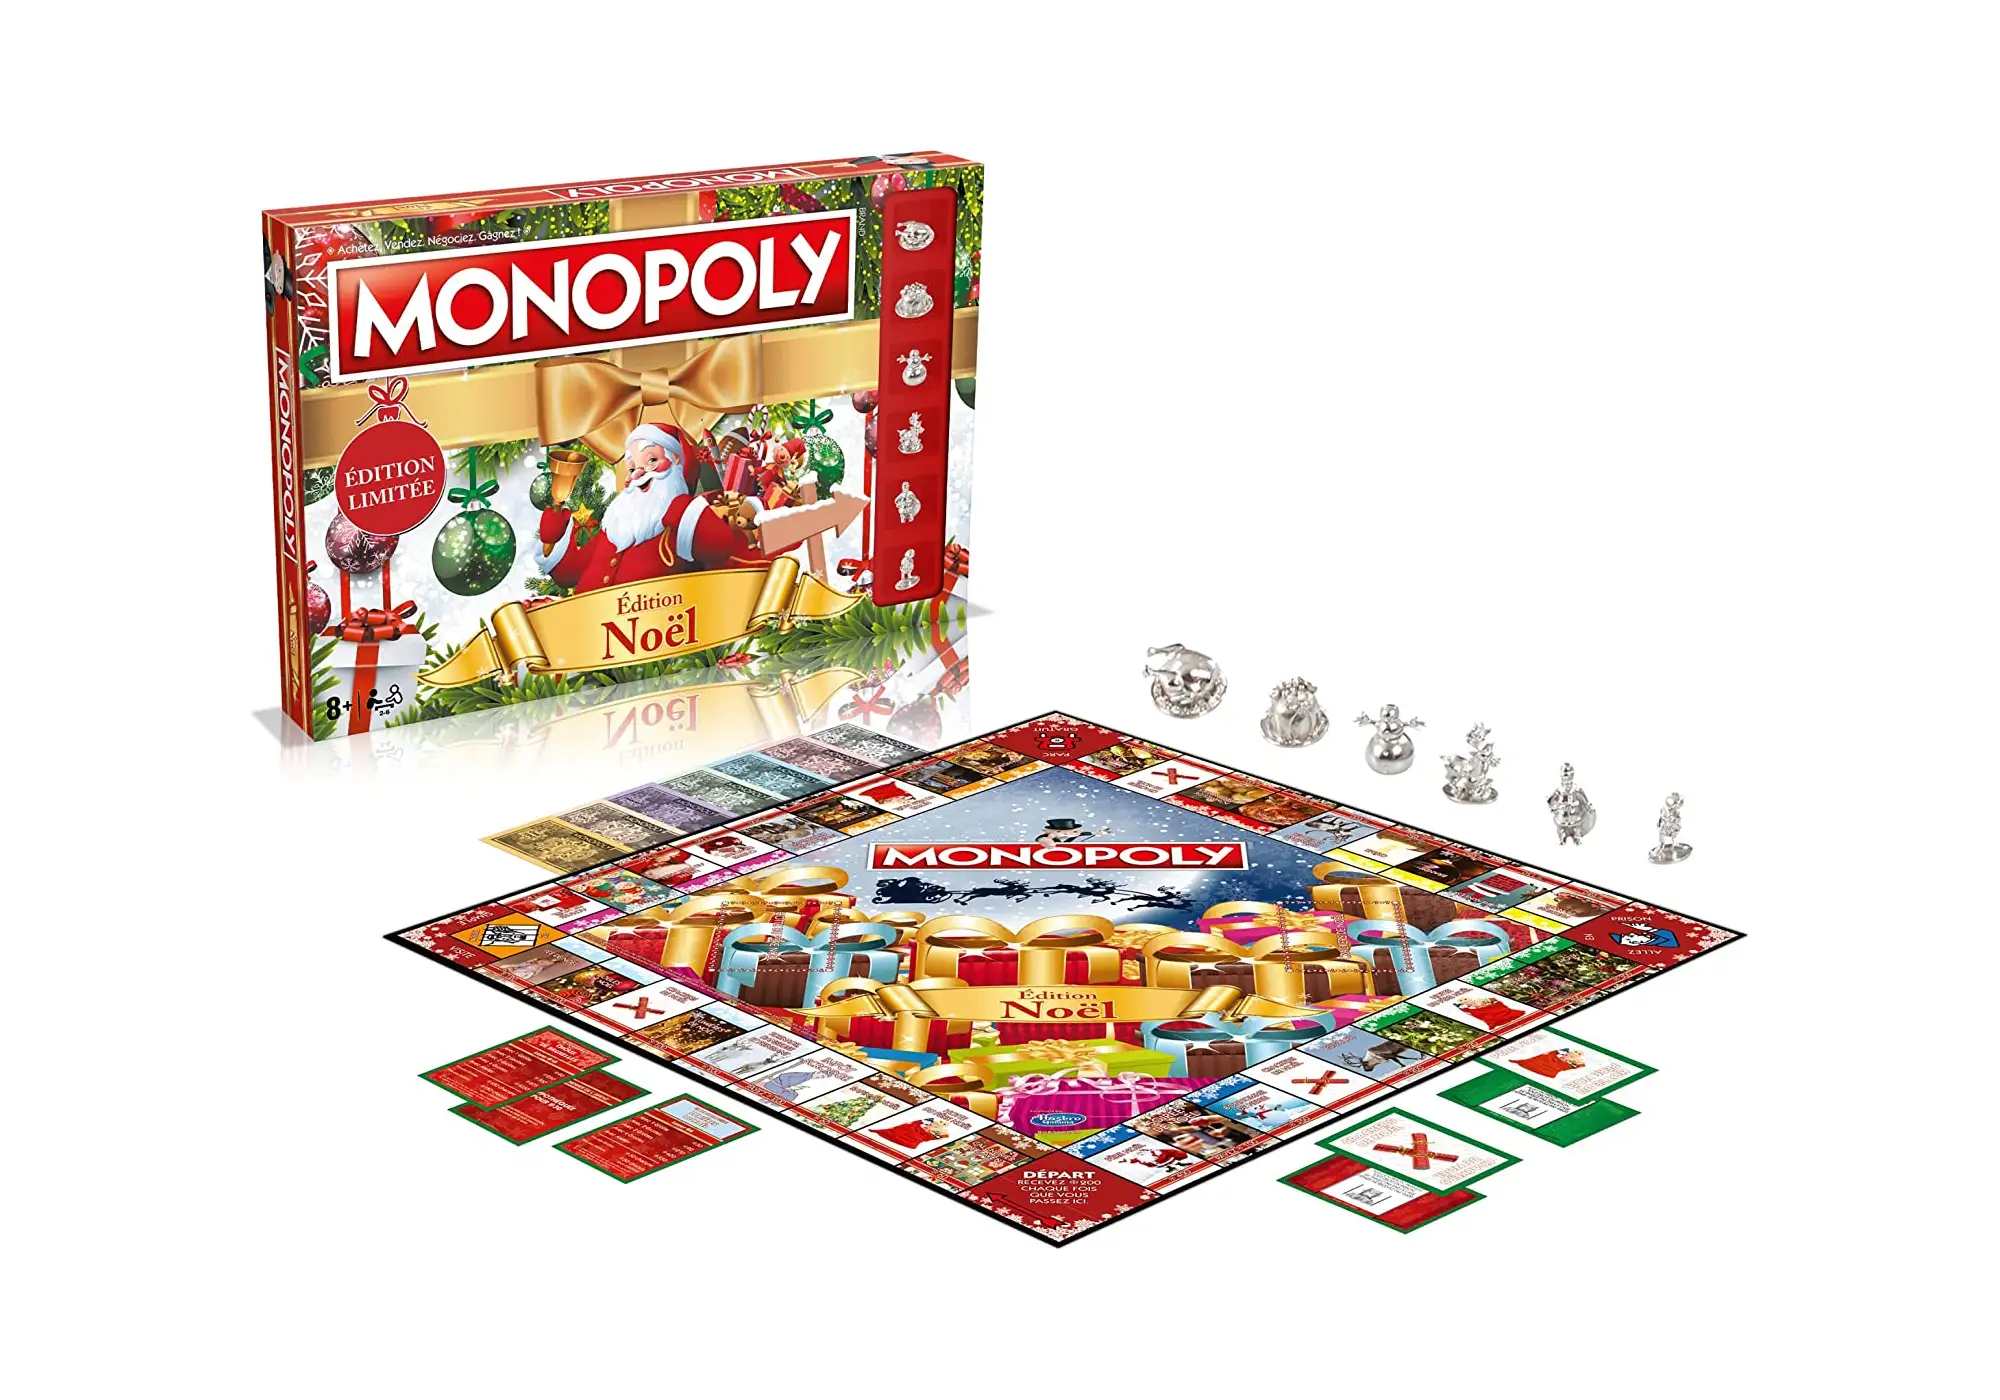 7 meilleures idées sur Billet monopoly  billet monopoly, monopoly, jeux  monopoly